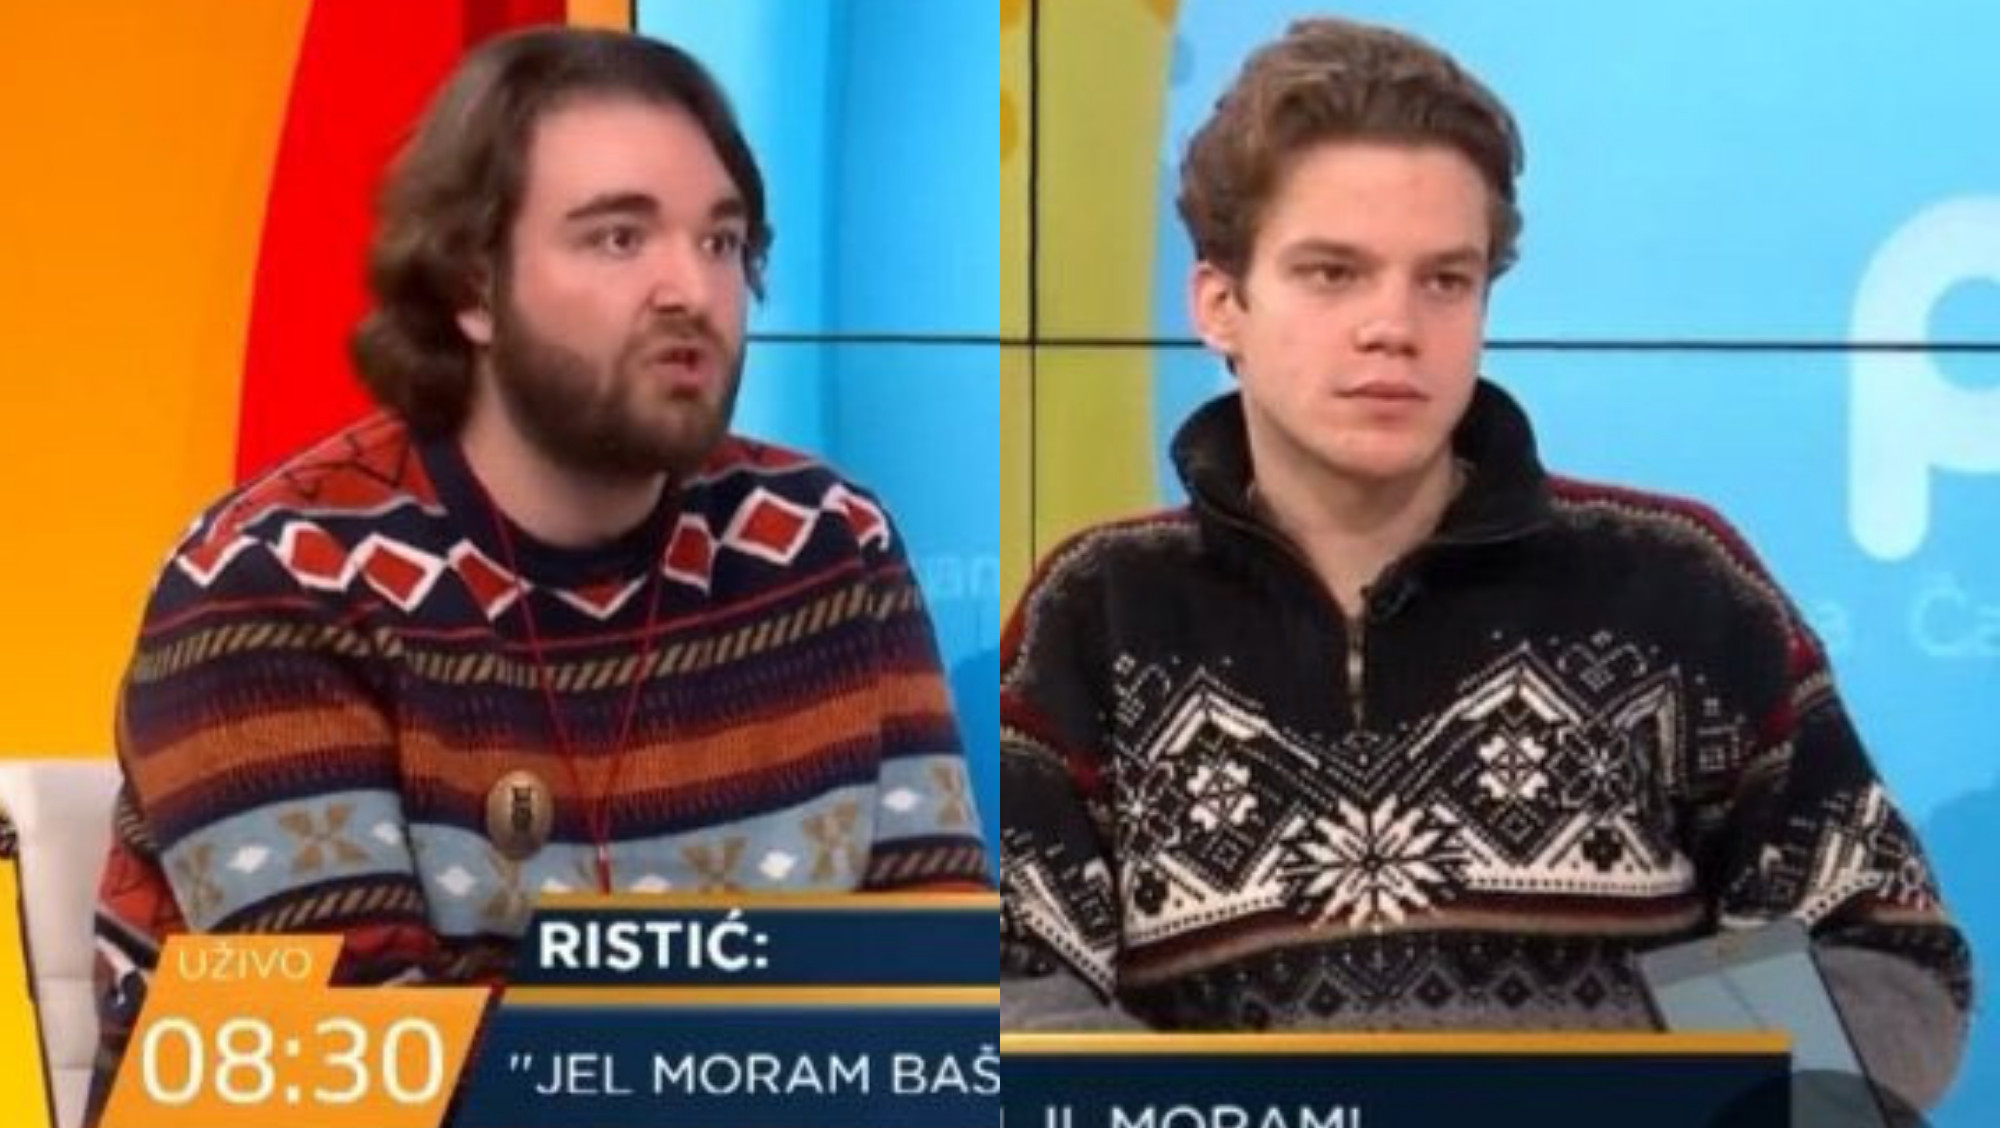 Džemper revolucija: Otkrili smo zašto svi bruje o šarenim džemperima i zašto se nose baš u decembru